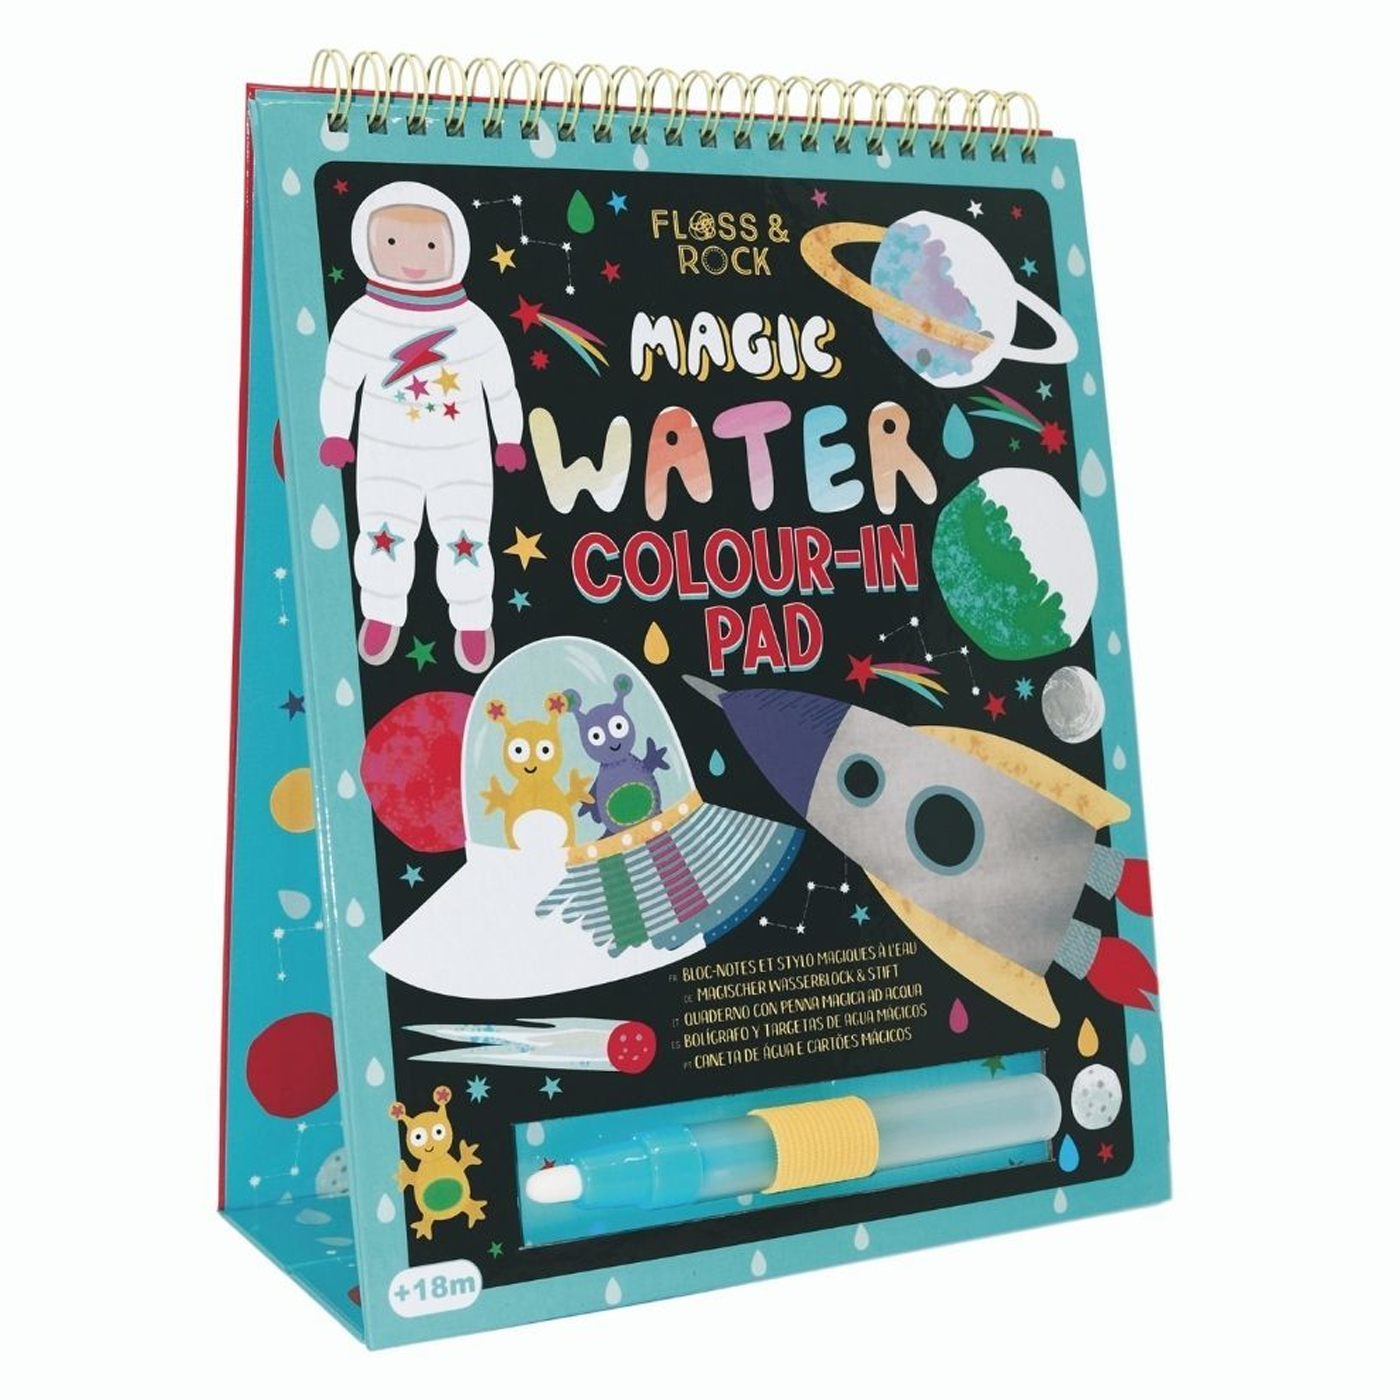  Floss & Rock Renk Değiştiren Water Magic Boyama Kitabı - Space